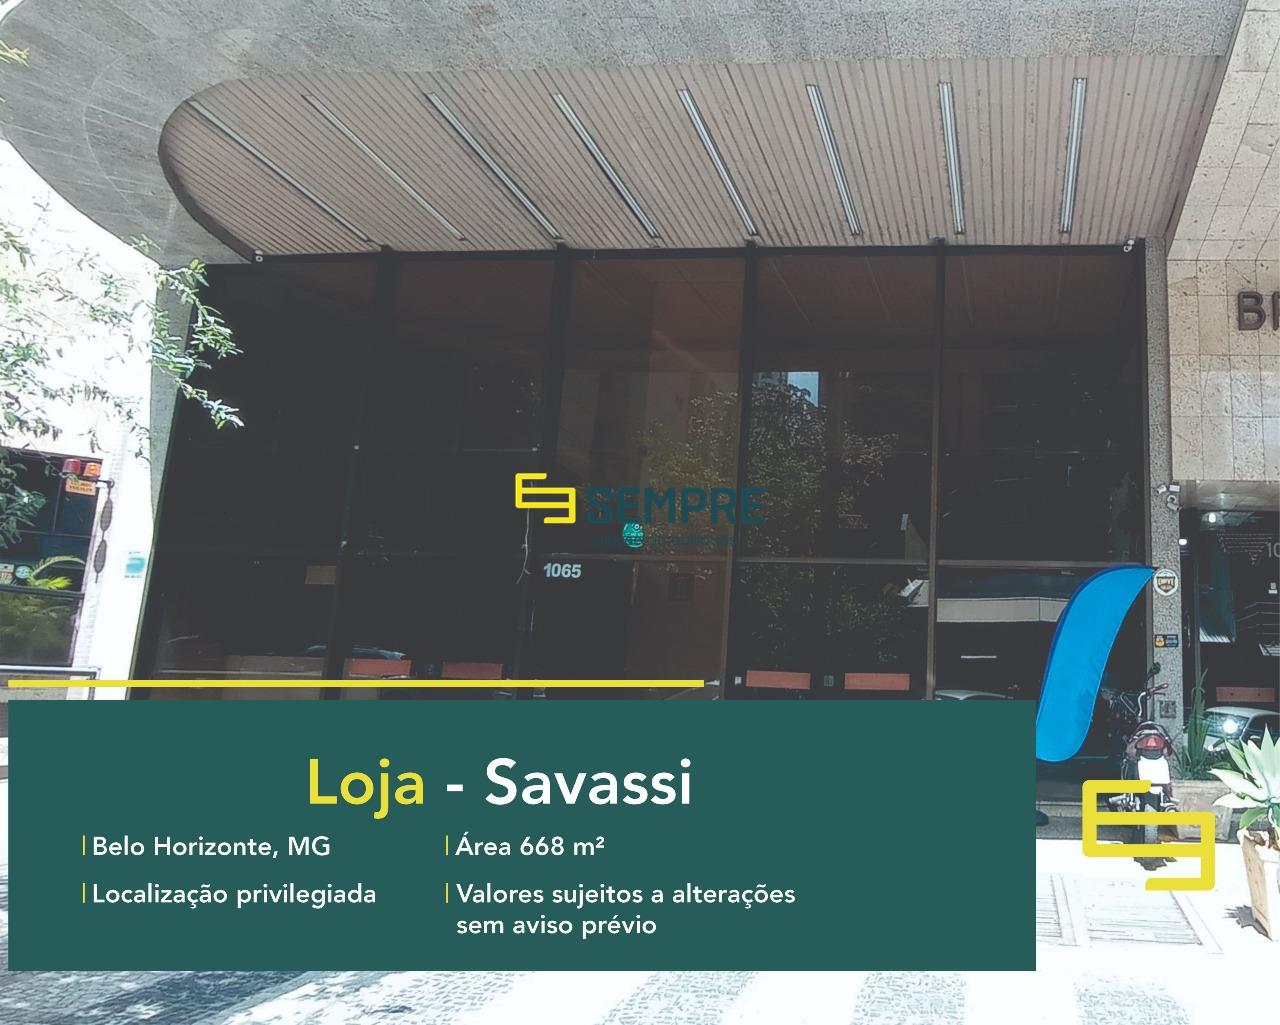 Loja na Savassi para vender em Belo Horizonte, em excelente localização. O estabelecimento comercial conta, sobretudo, com área de 668 m².